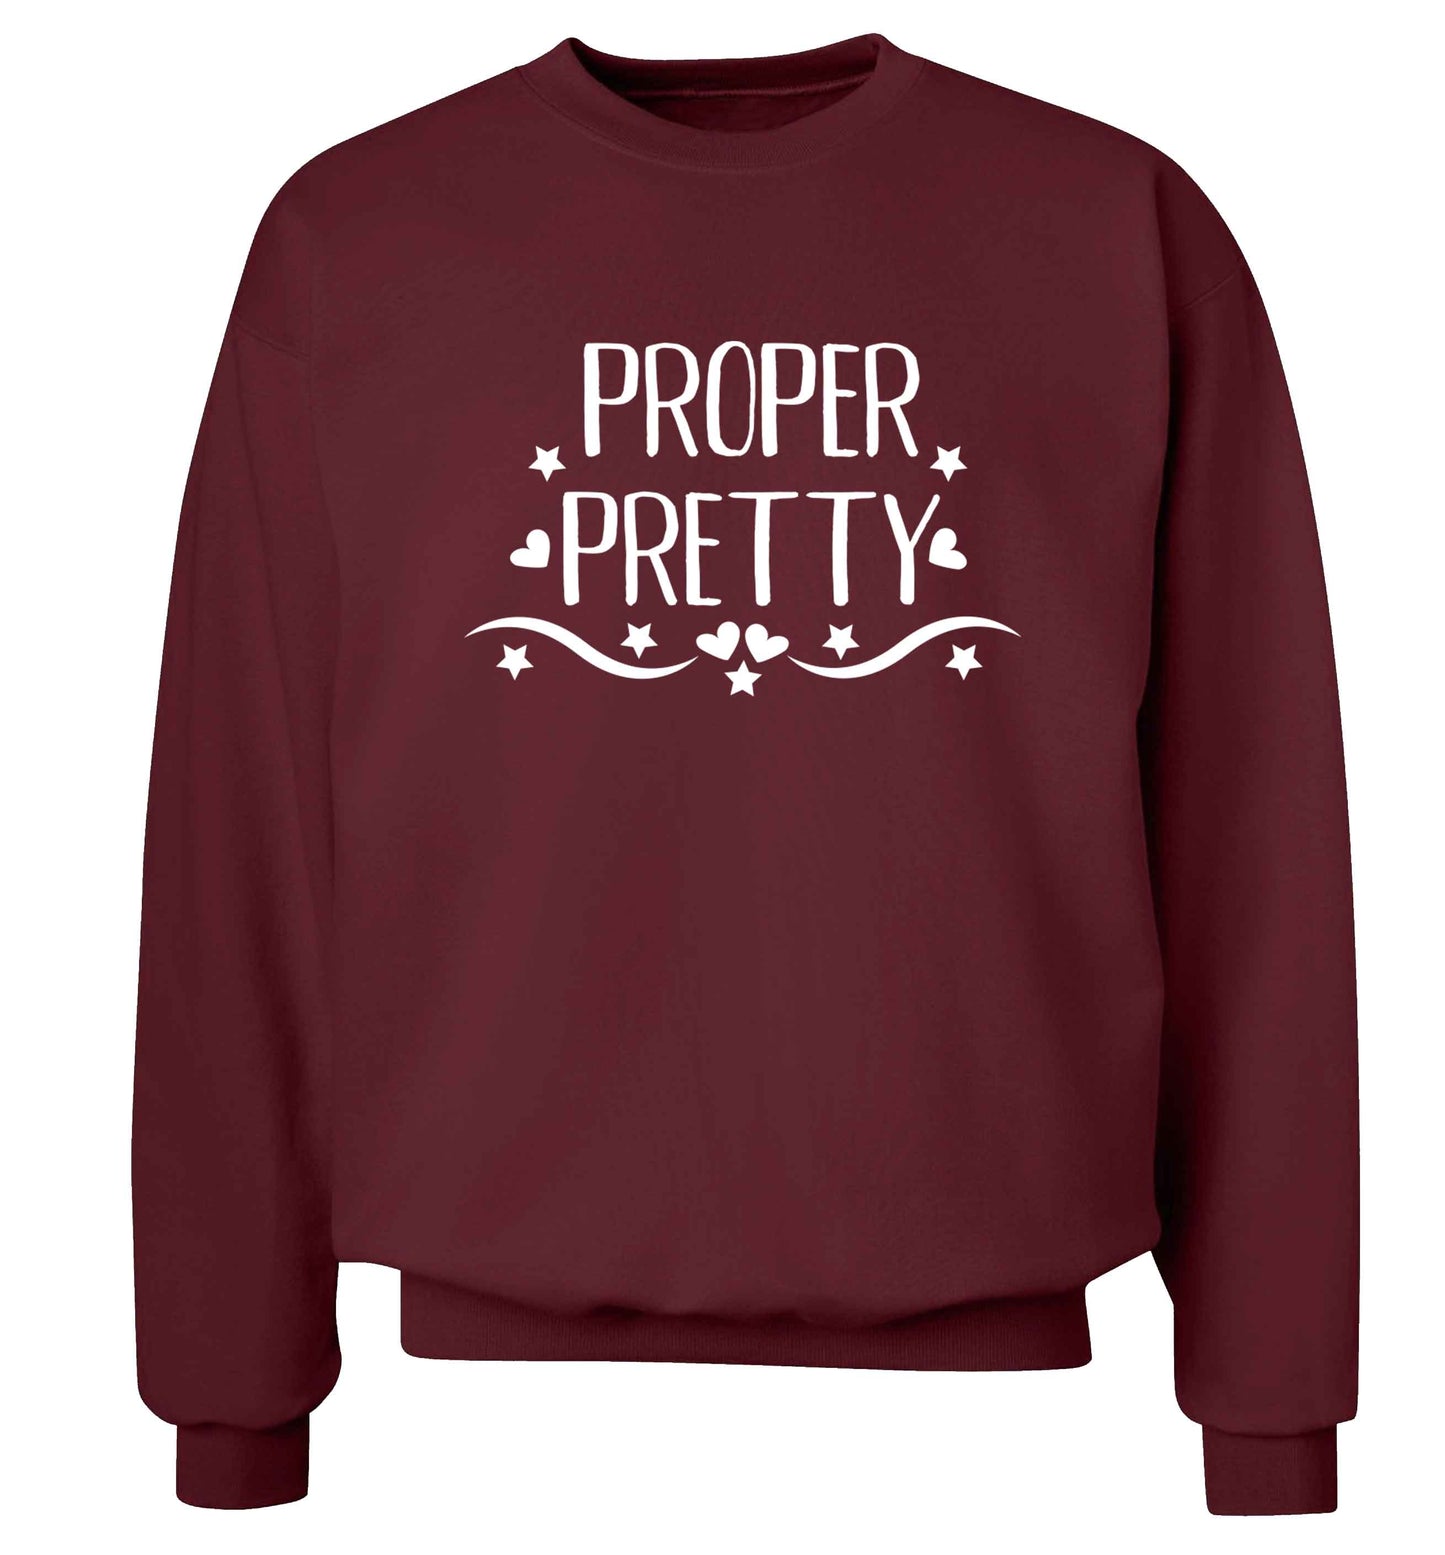 Proper pretty Adult's unisex maroon Sweater 2XL